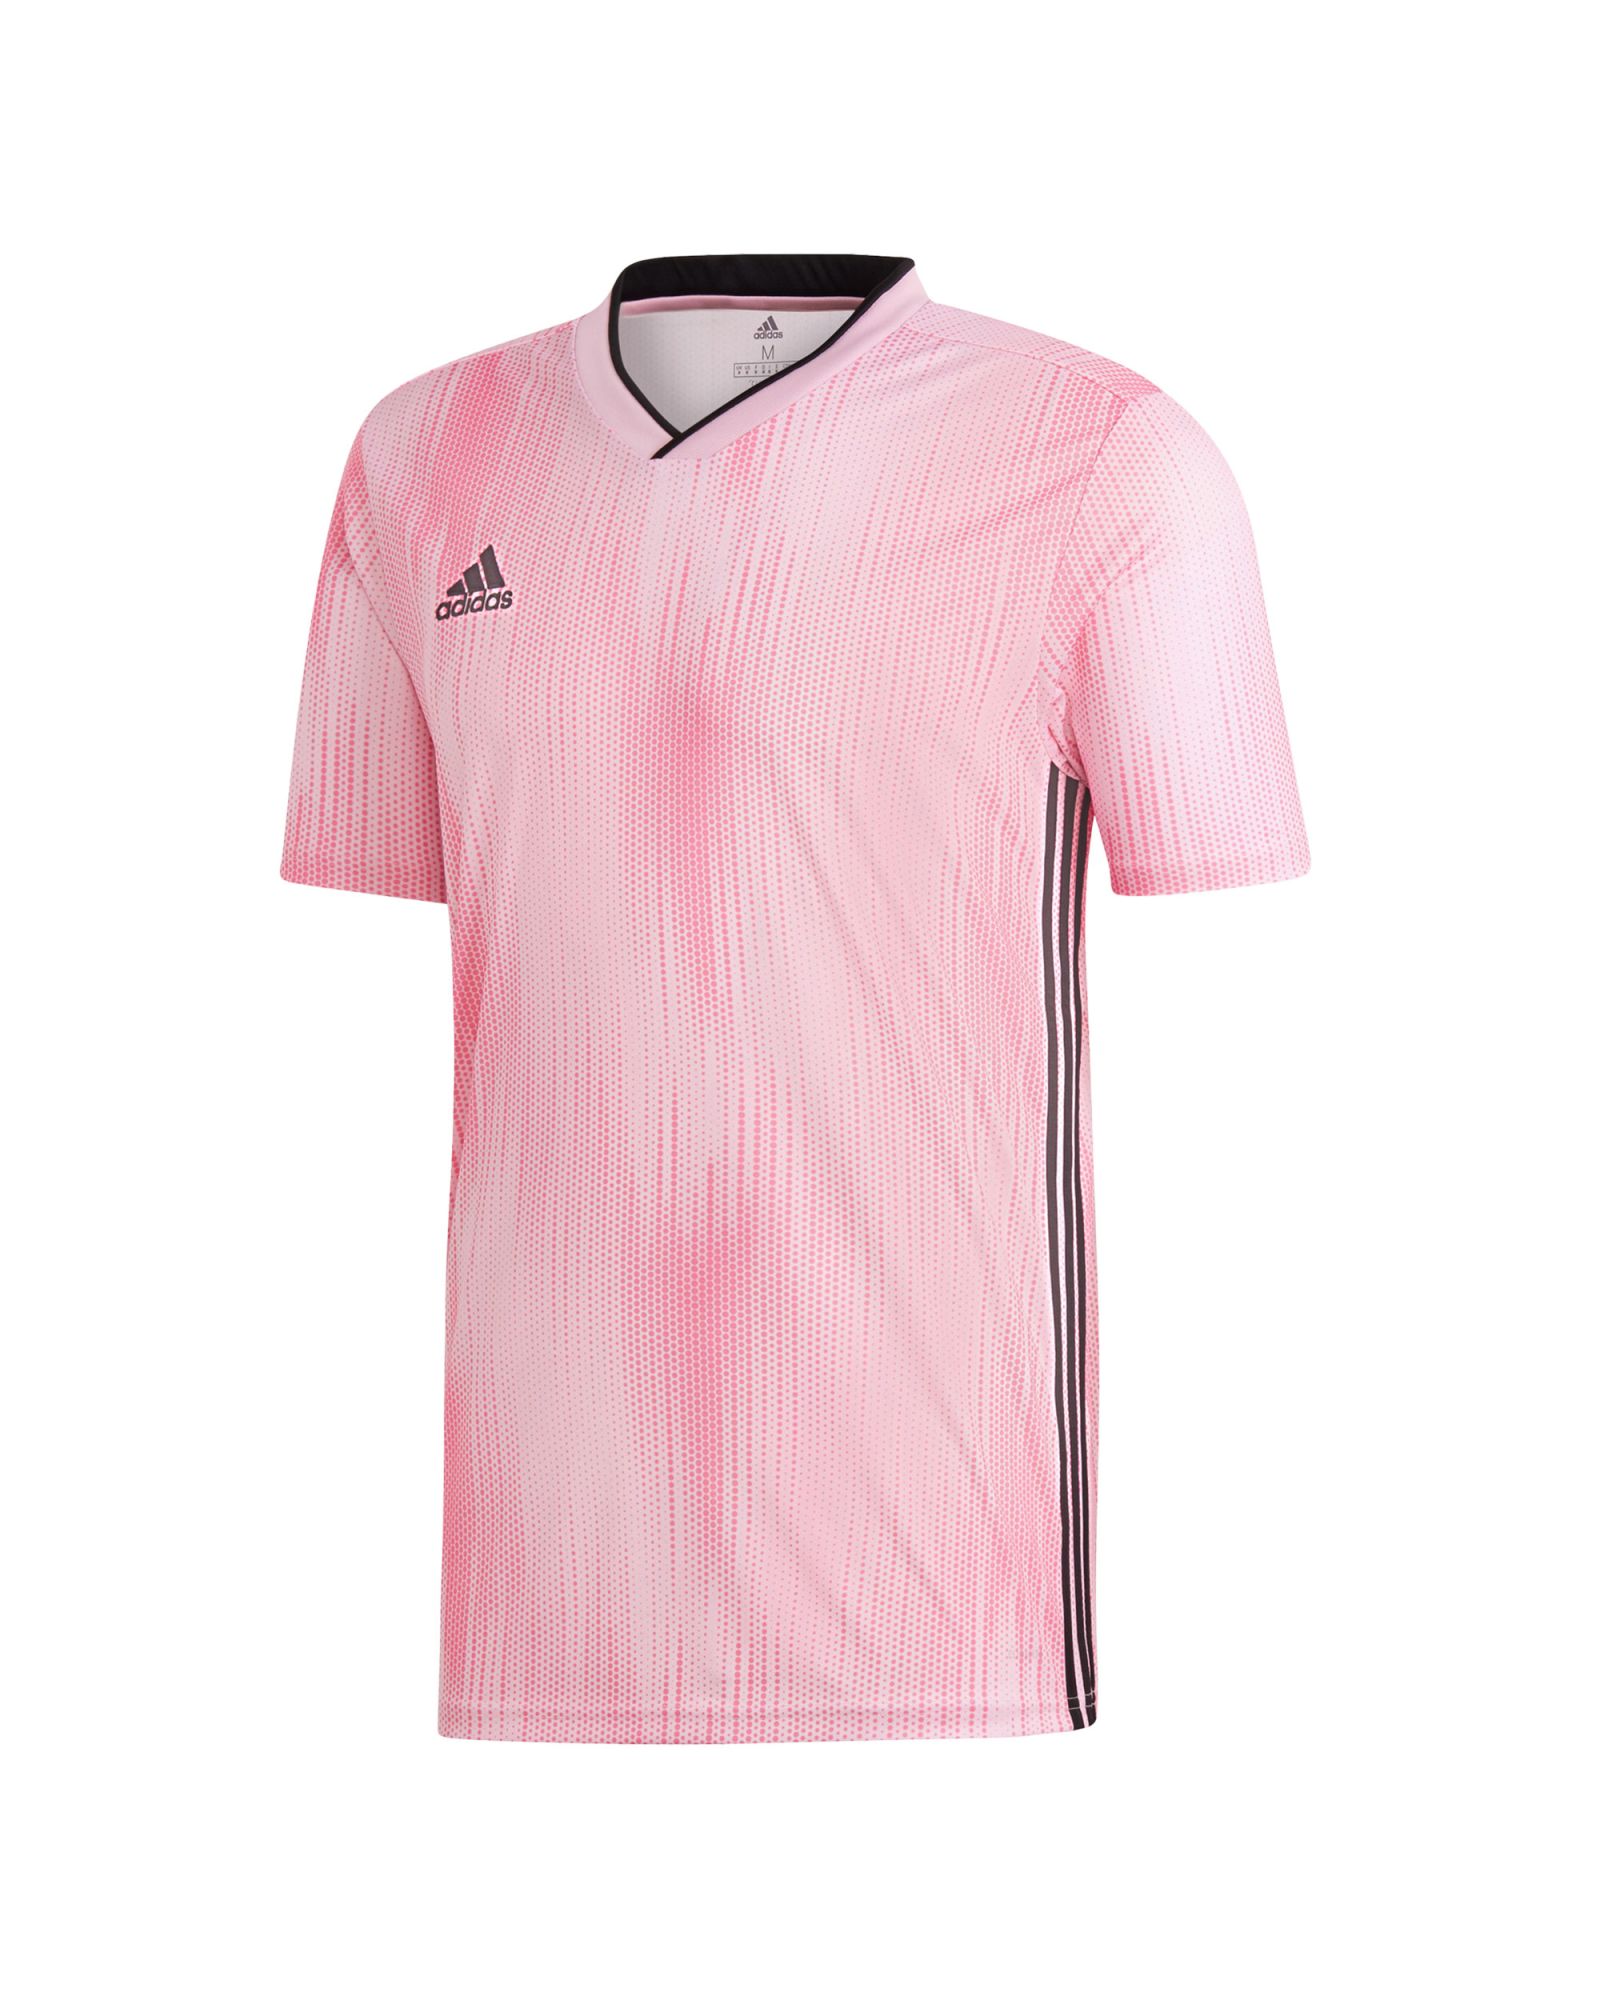 Camiseta de Fútbol Tiro 19 Junior Rosa Negro - Fútbol Factory